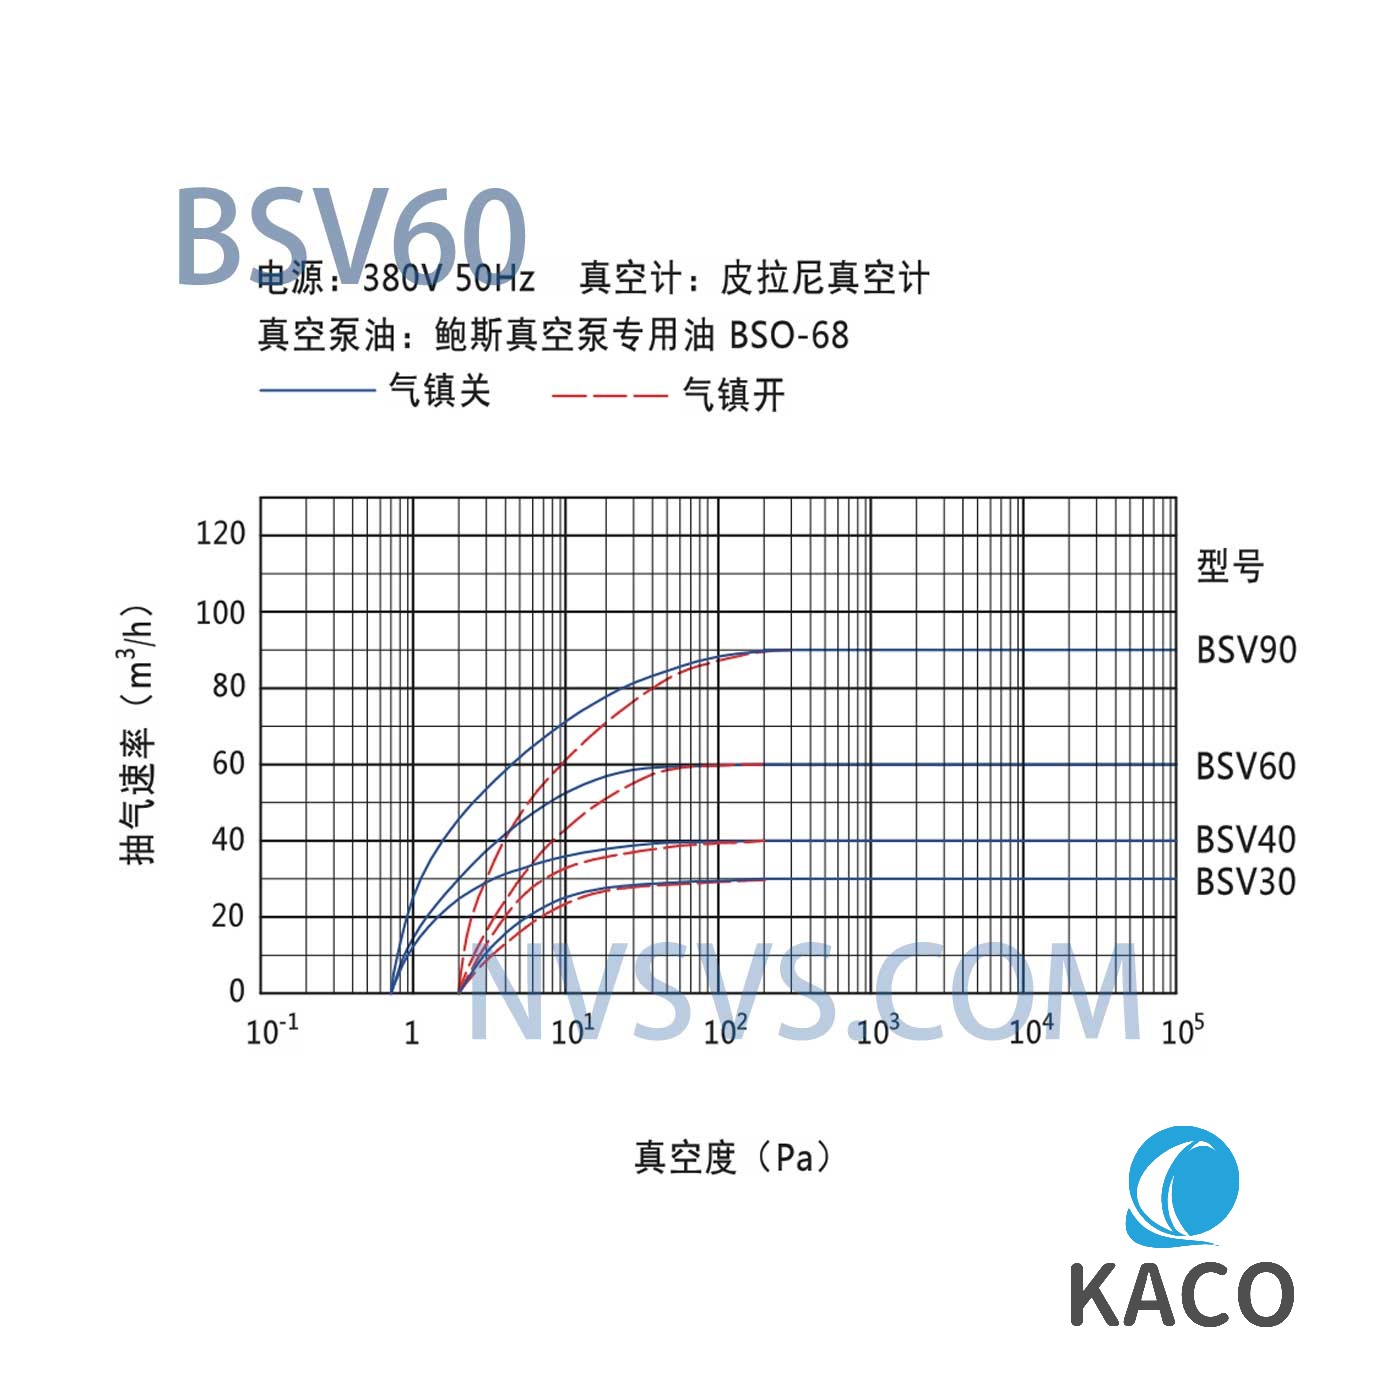 鲍斯真空泵BSV60双级油旋片式真空泵抽速曲线